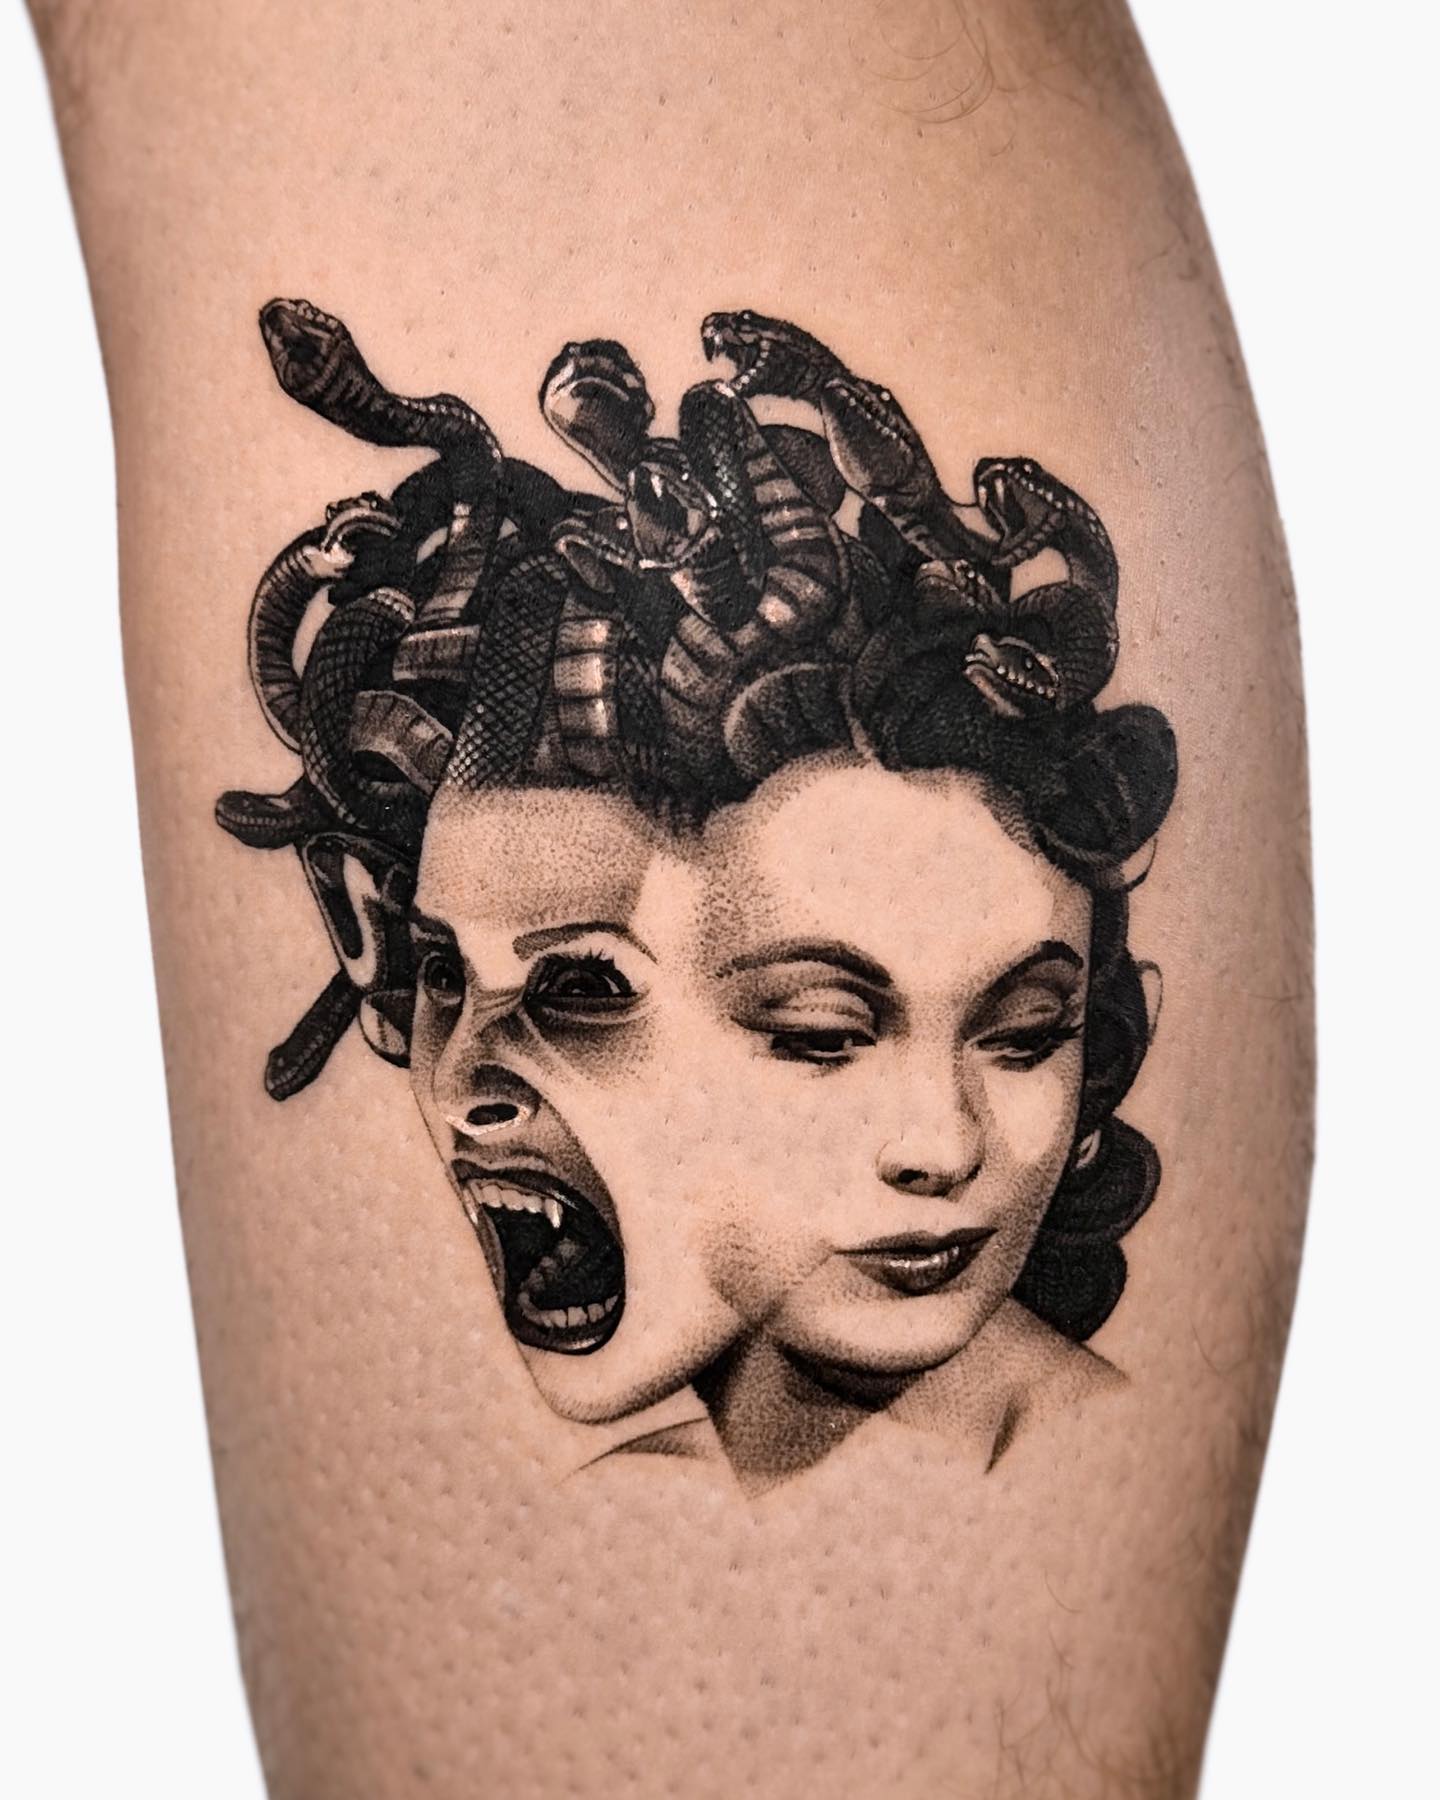 Double-faced Scary Medusa Tattoo on Leg